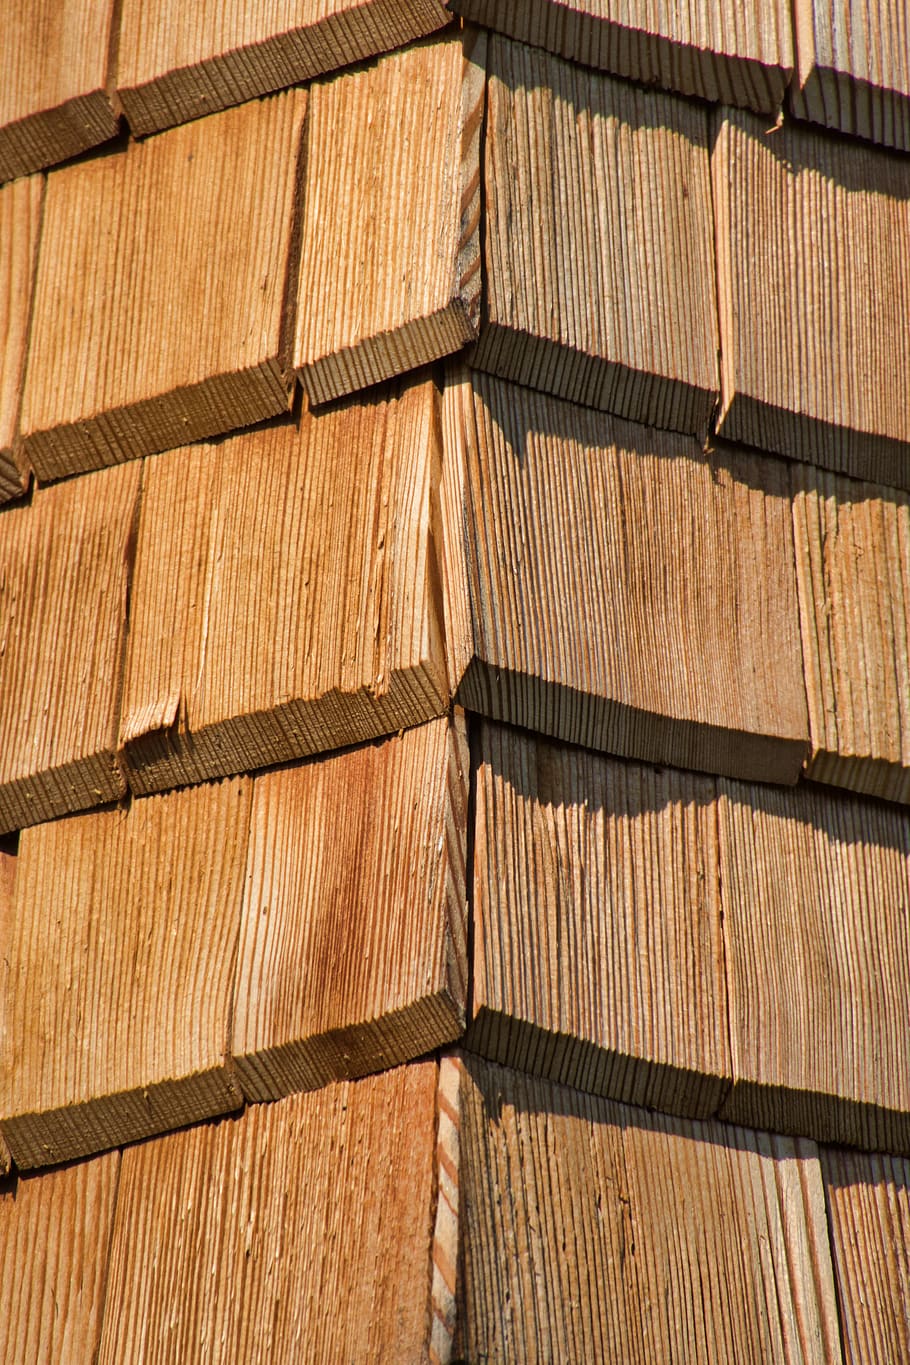 teja, tejas de madera, fachada, revestimiento de fachada, fotograma completo, fondos, patrón, marrón, madera - material, madera